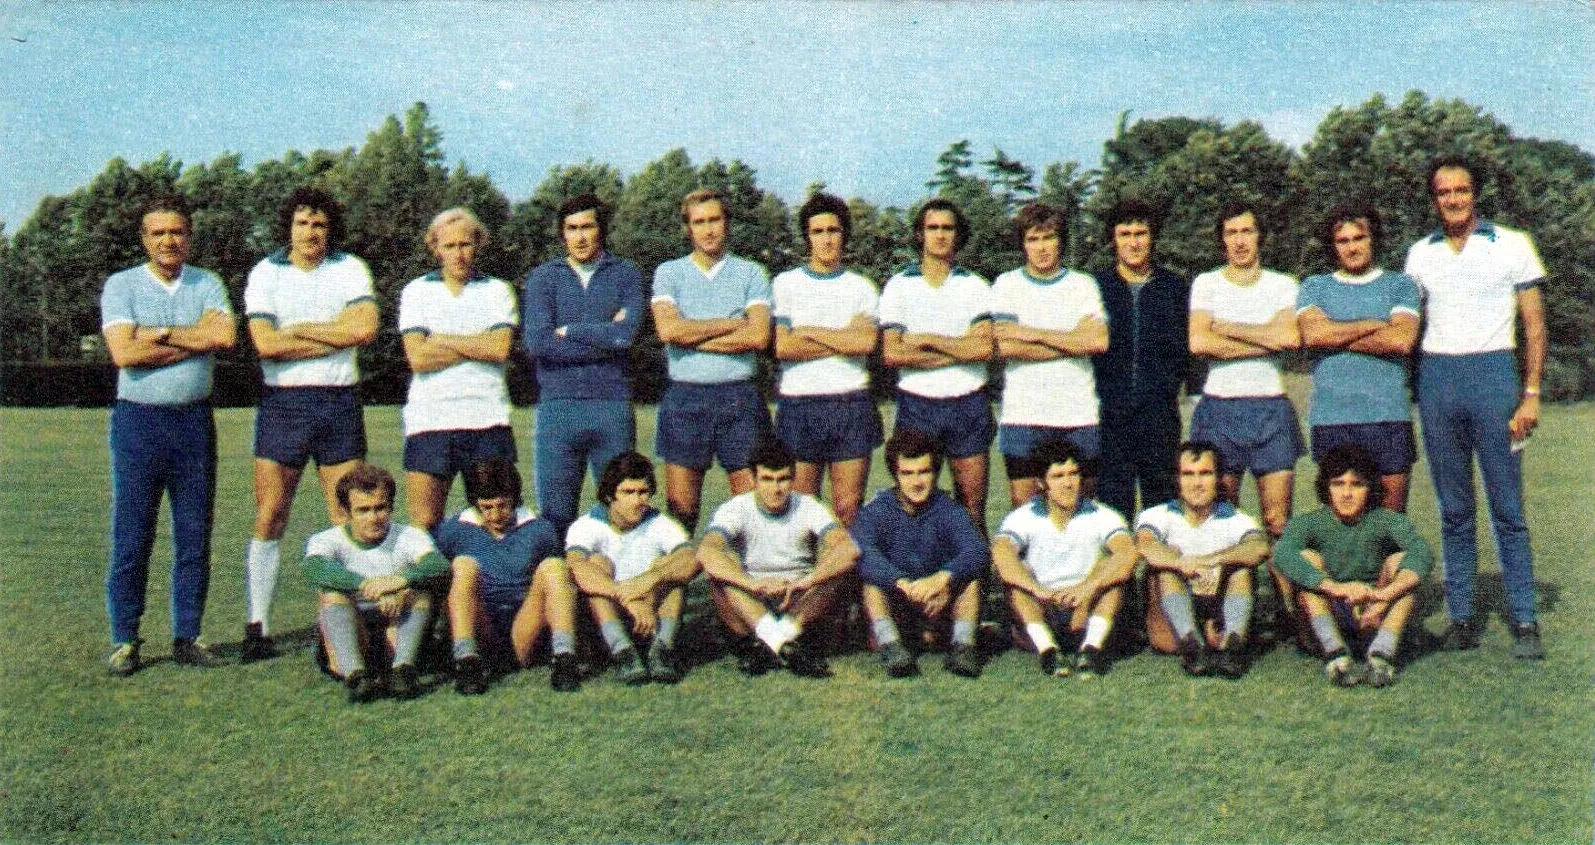 Photo showing: The first-team squad of S.S. Lazio in the 1972–73 season. From left to right, standing: T. Maestrelli (head coach), G. Chinaglia, L. Re Cecconi, F. Pulici, M. Facco, T. Frau (sold in the autumn transfer window), L. Martini, G. Oddi, L. Polentes, G. Wilson (captain), R. Lovati (assistant coach), crouched: F. Mazzola, P. Manservisi, R. Garlaschelli, S. Petrelli, M. Silva (sold in the autumn transfer window), F. Nanni, M. Frustalupi, F. Cinquepalmi.